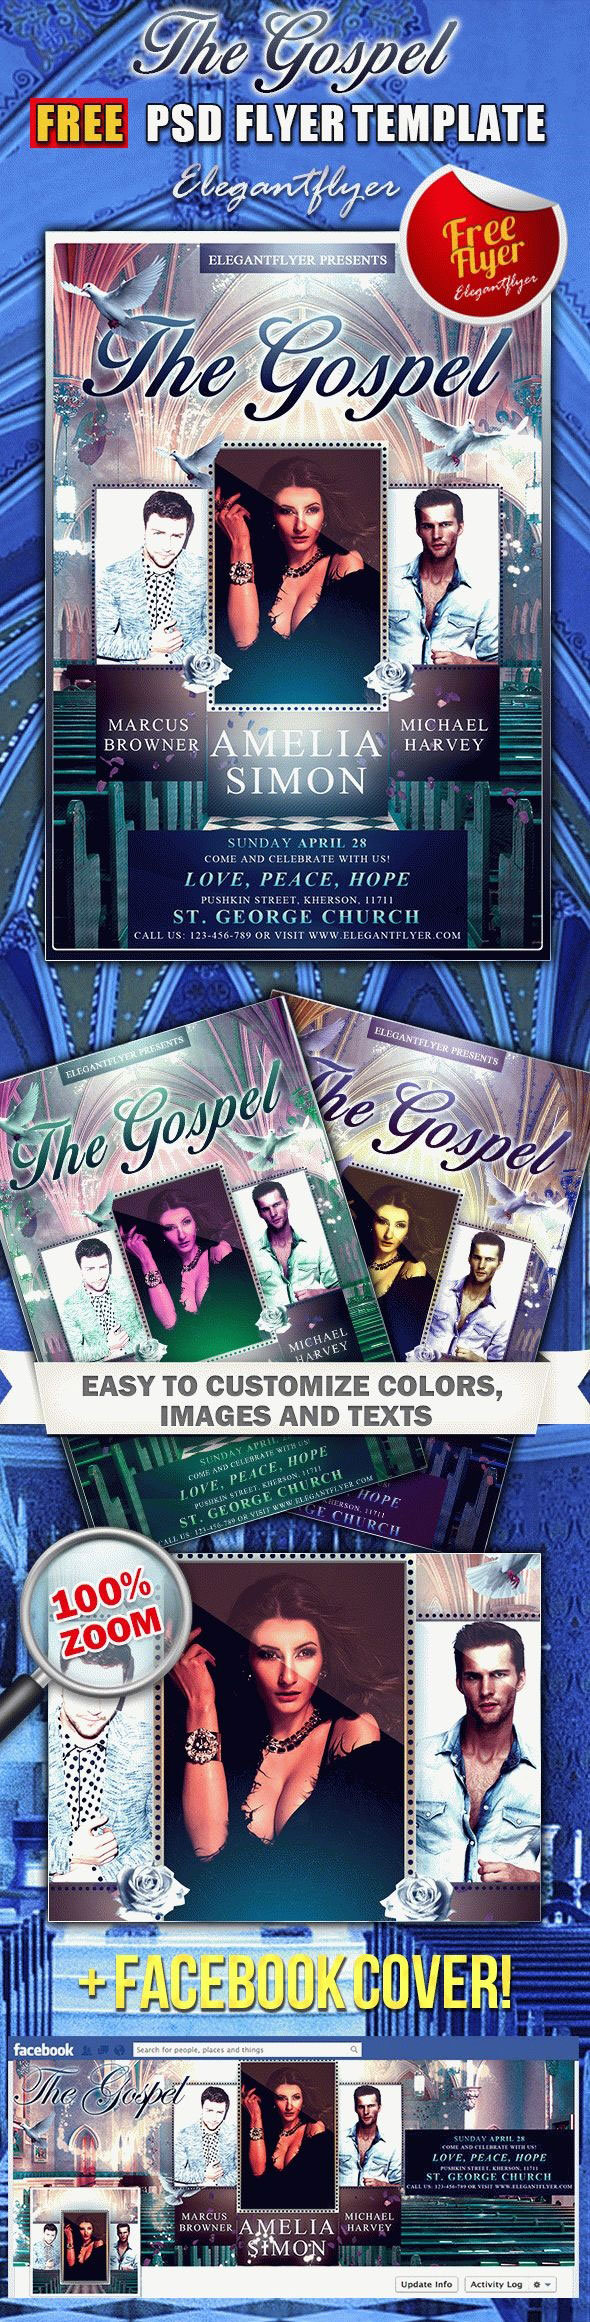 Творческий шаблон флаера моды с творческим религиозным евангельем с обложкой на Facebook